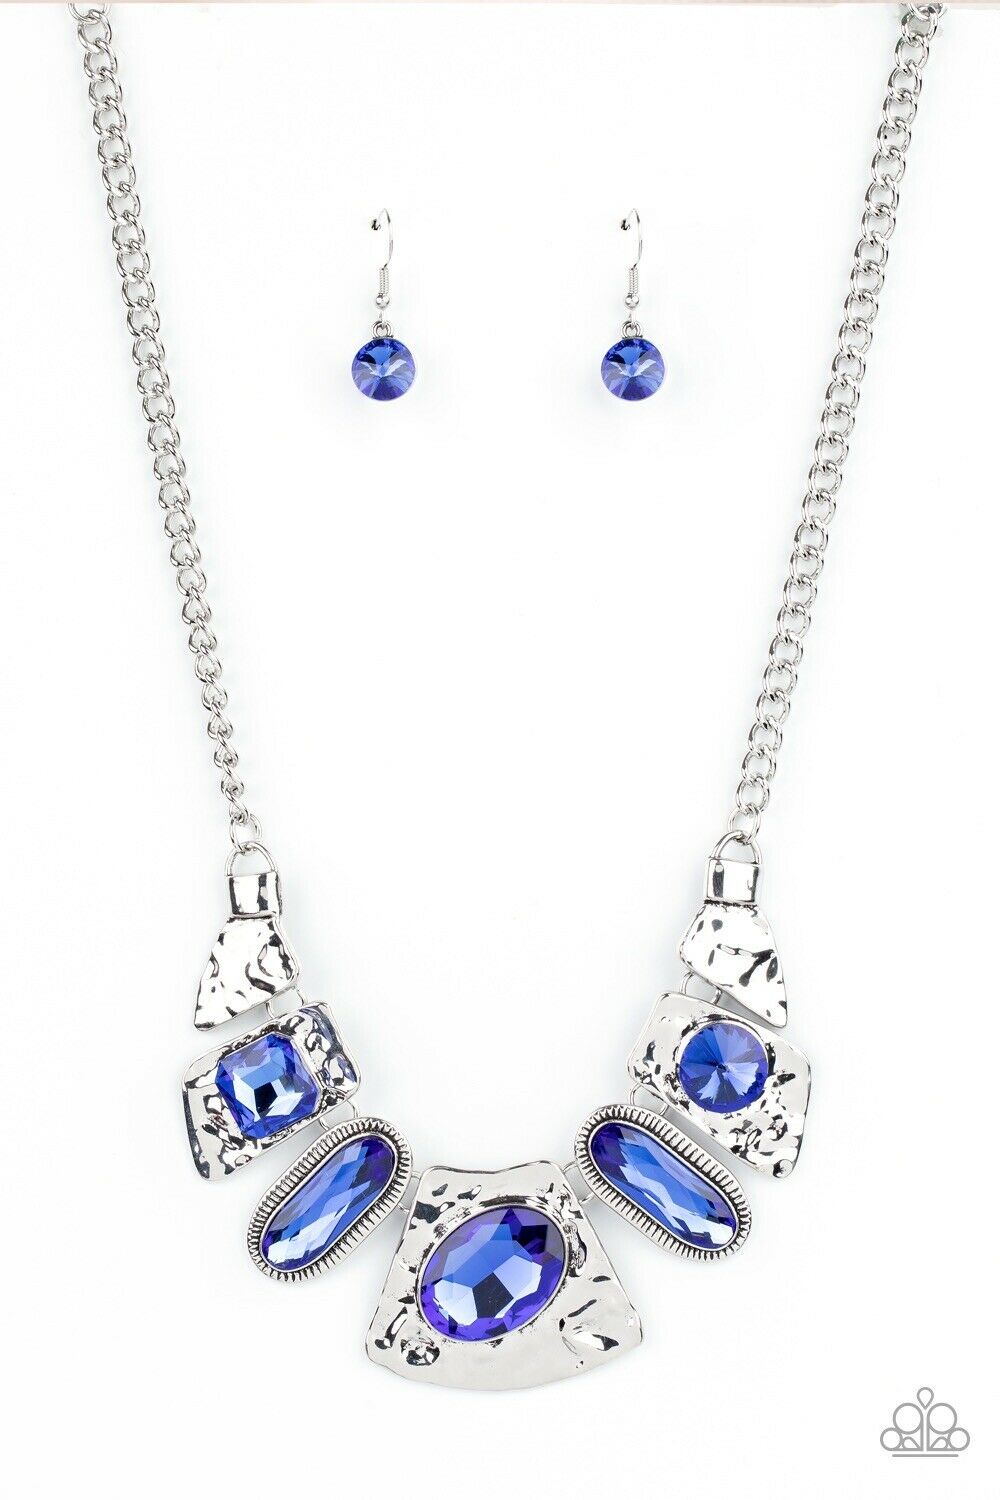 Futuristic Fashionista Blue Rhinestone and Silver Necklace - Paparazzi Accessories